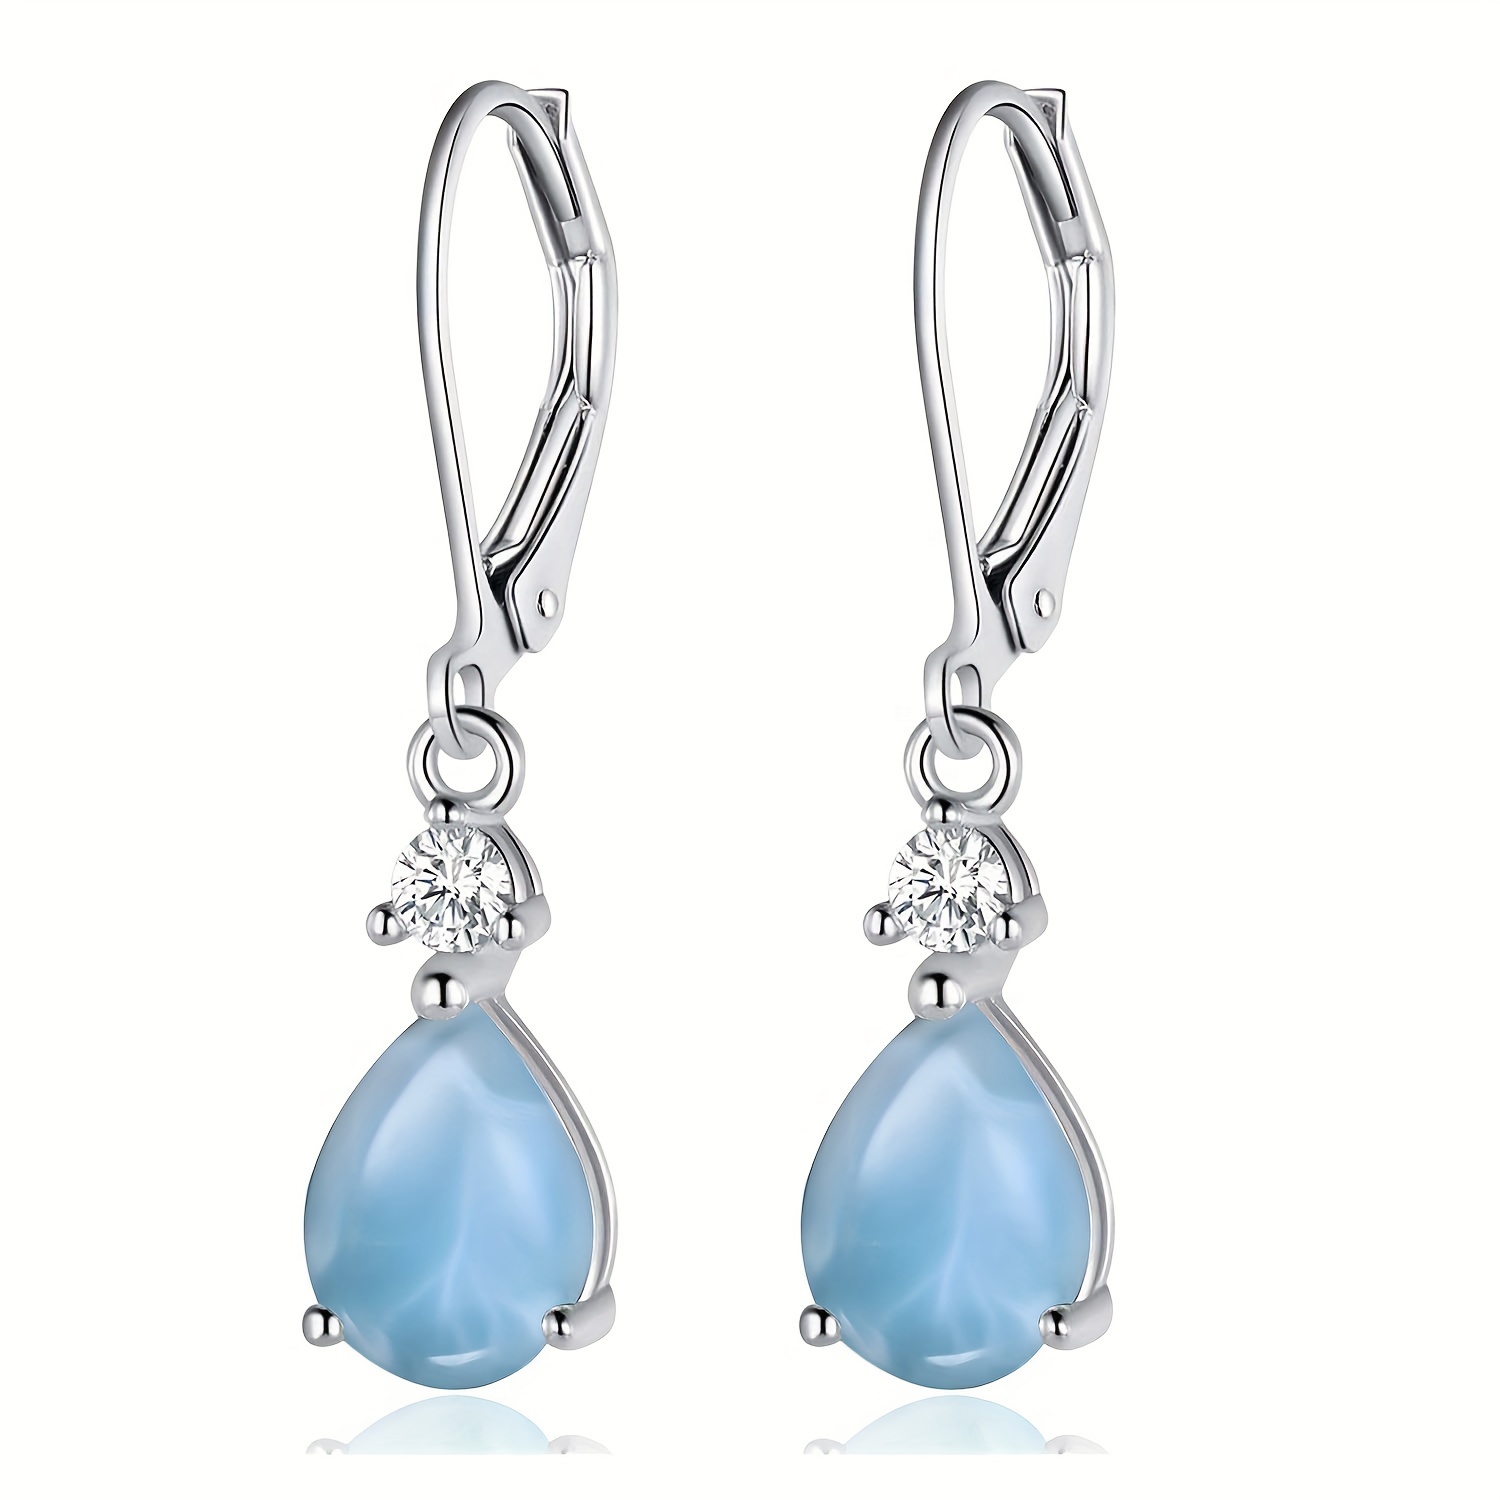 

Teardrop Pendant Earrings For Men And Women, 925 Sterling Silver Gemstone Zircon Earrings (pear-shaped Pendant)